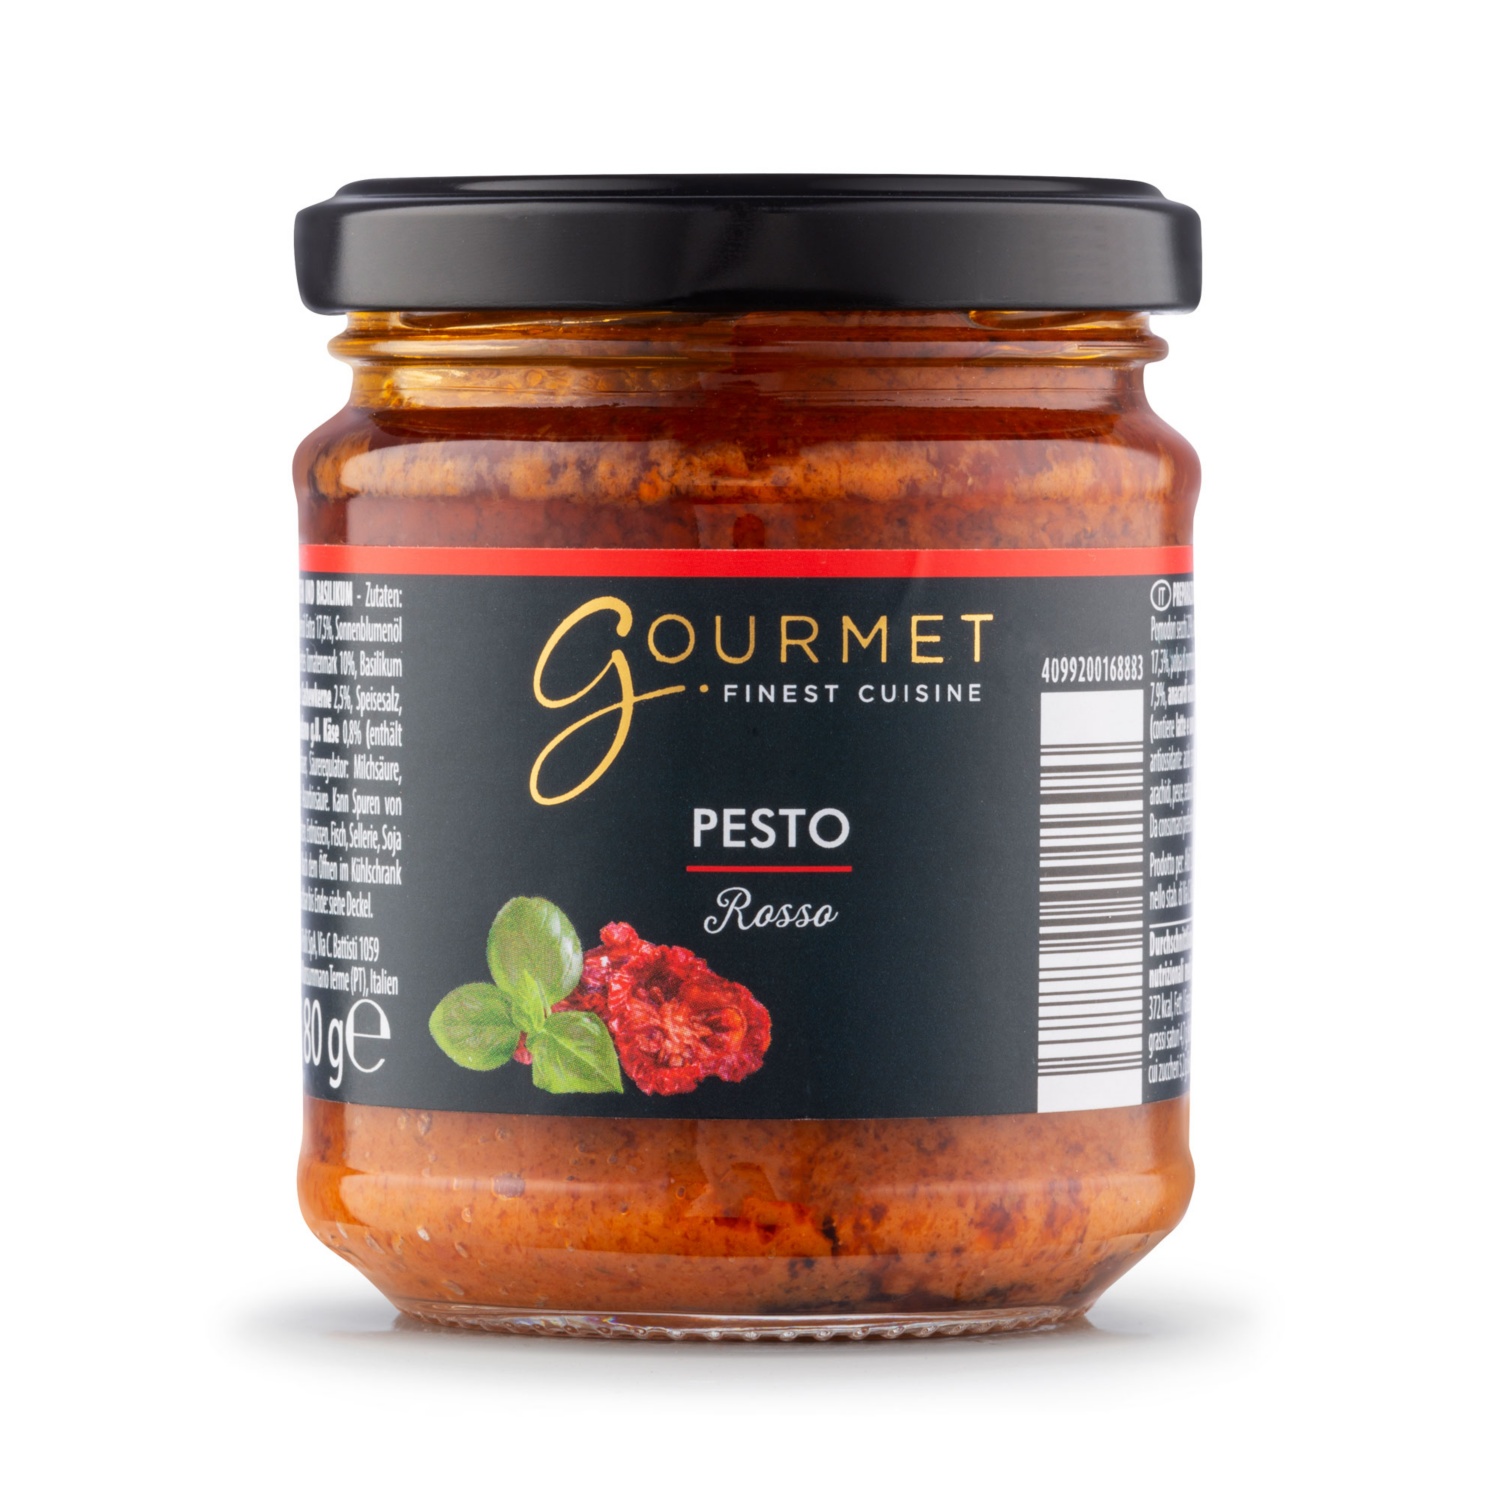 GOURMET Premium Pesto, Rosso